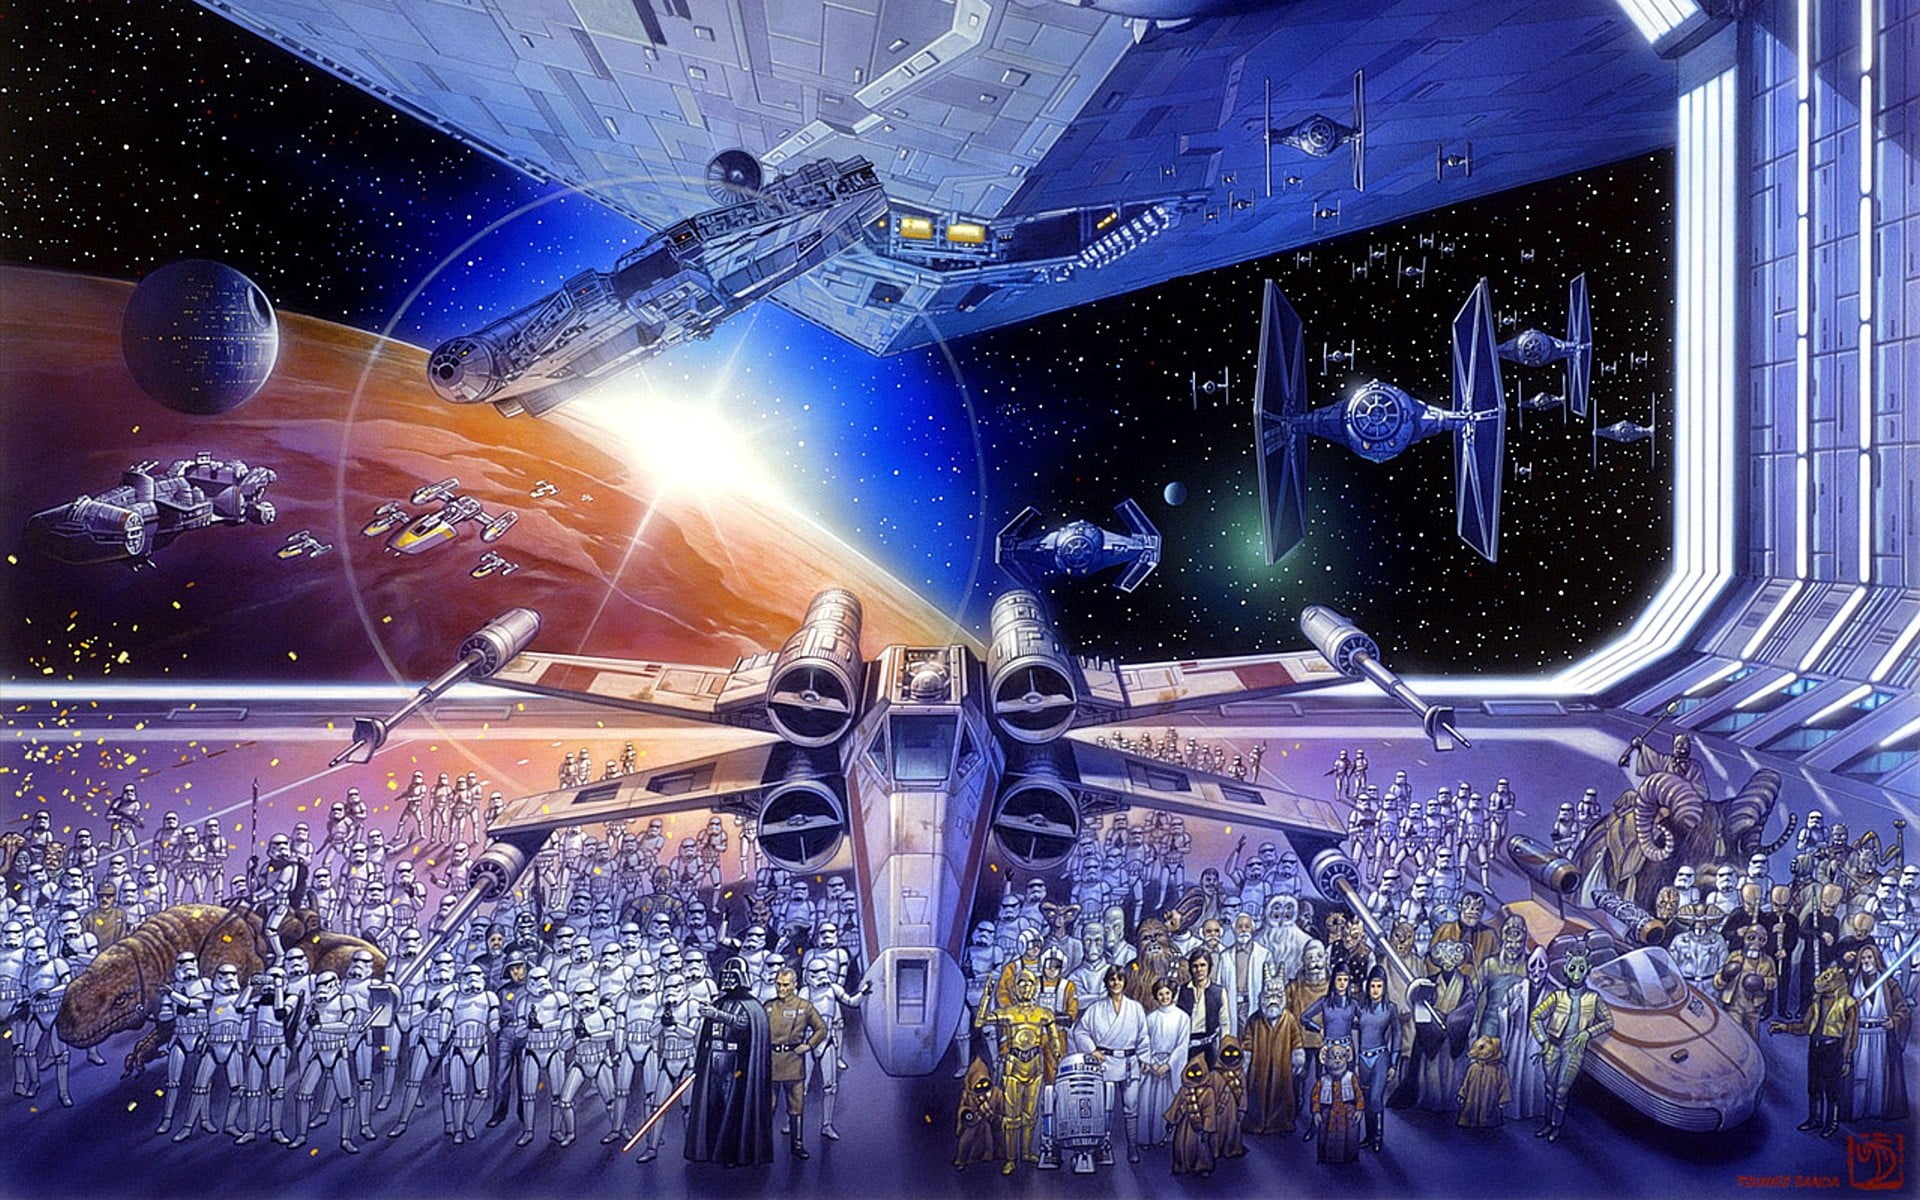 Star Wars movie poster, Star Wars, X-wing, TIE Fighter, Millennium Falcon